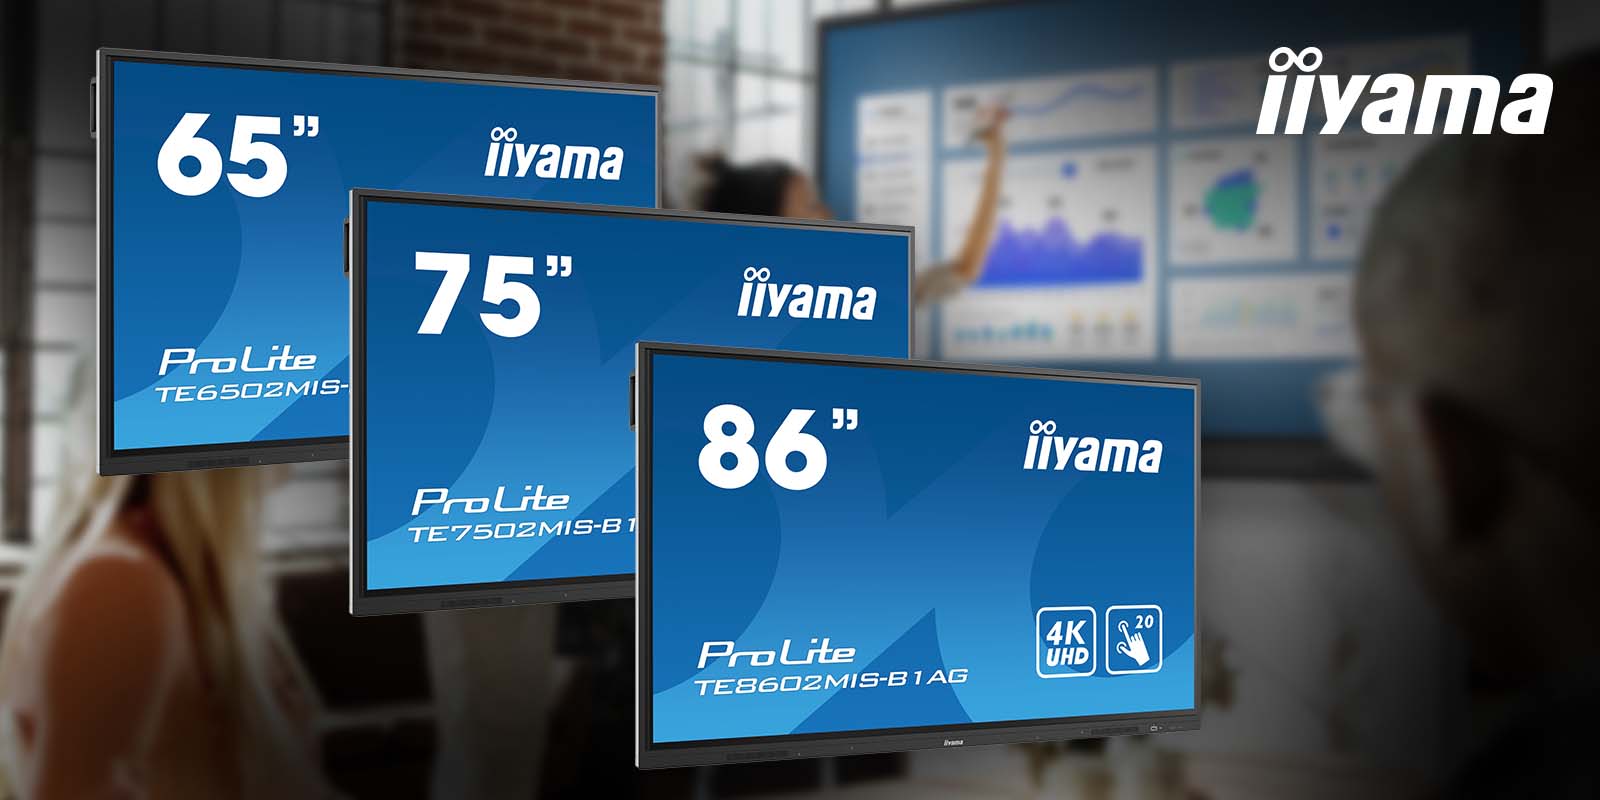 iiyama PROLITE TE &#8211; interaktive Touchscreen-Displays mit 4K-Auflösung und integrierter Whiteboard-Software